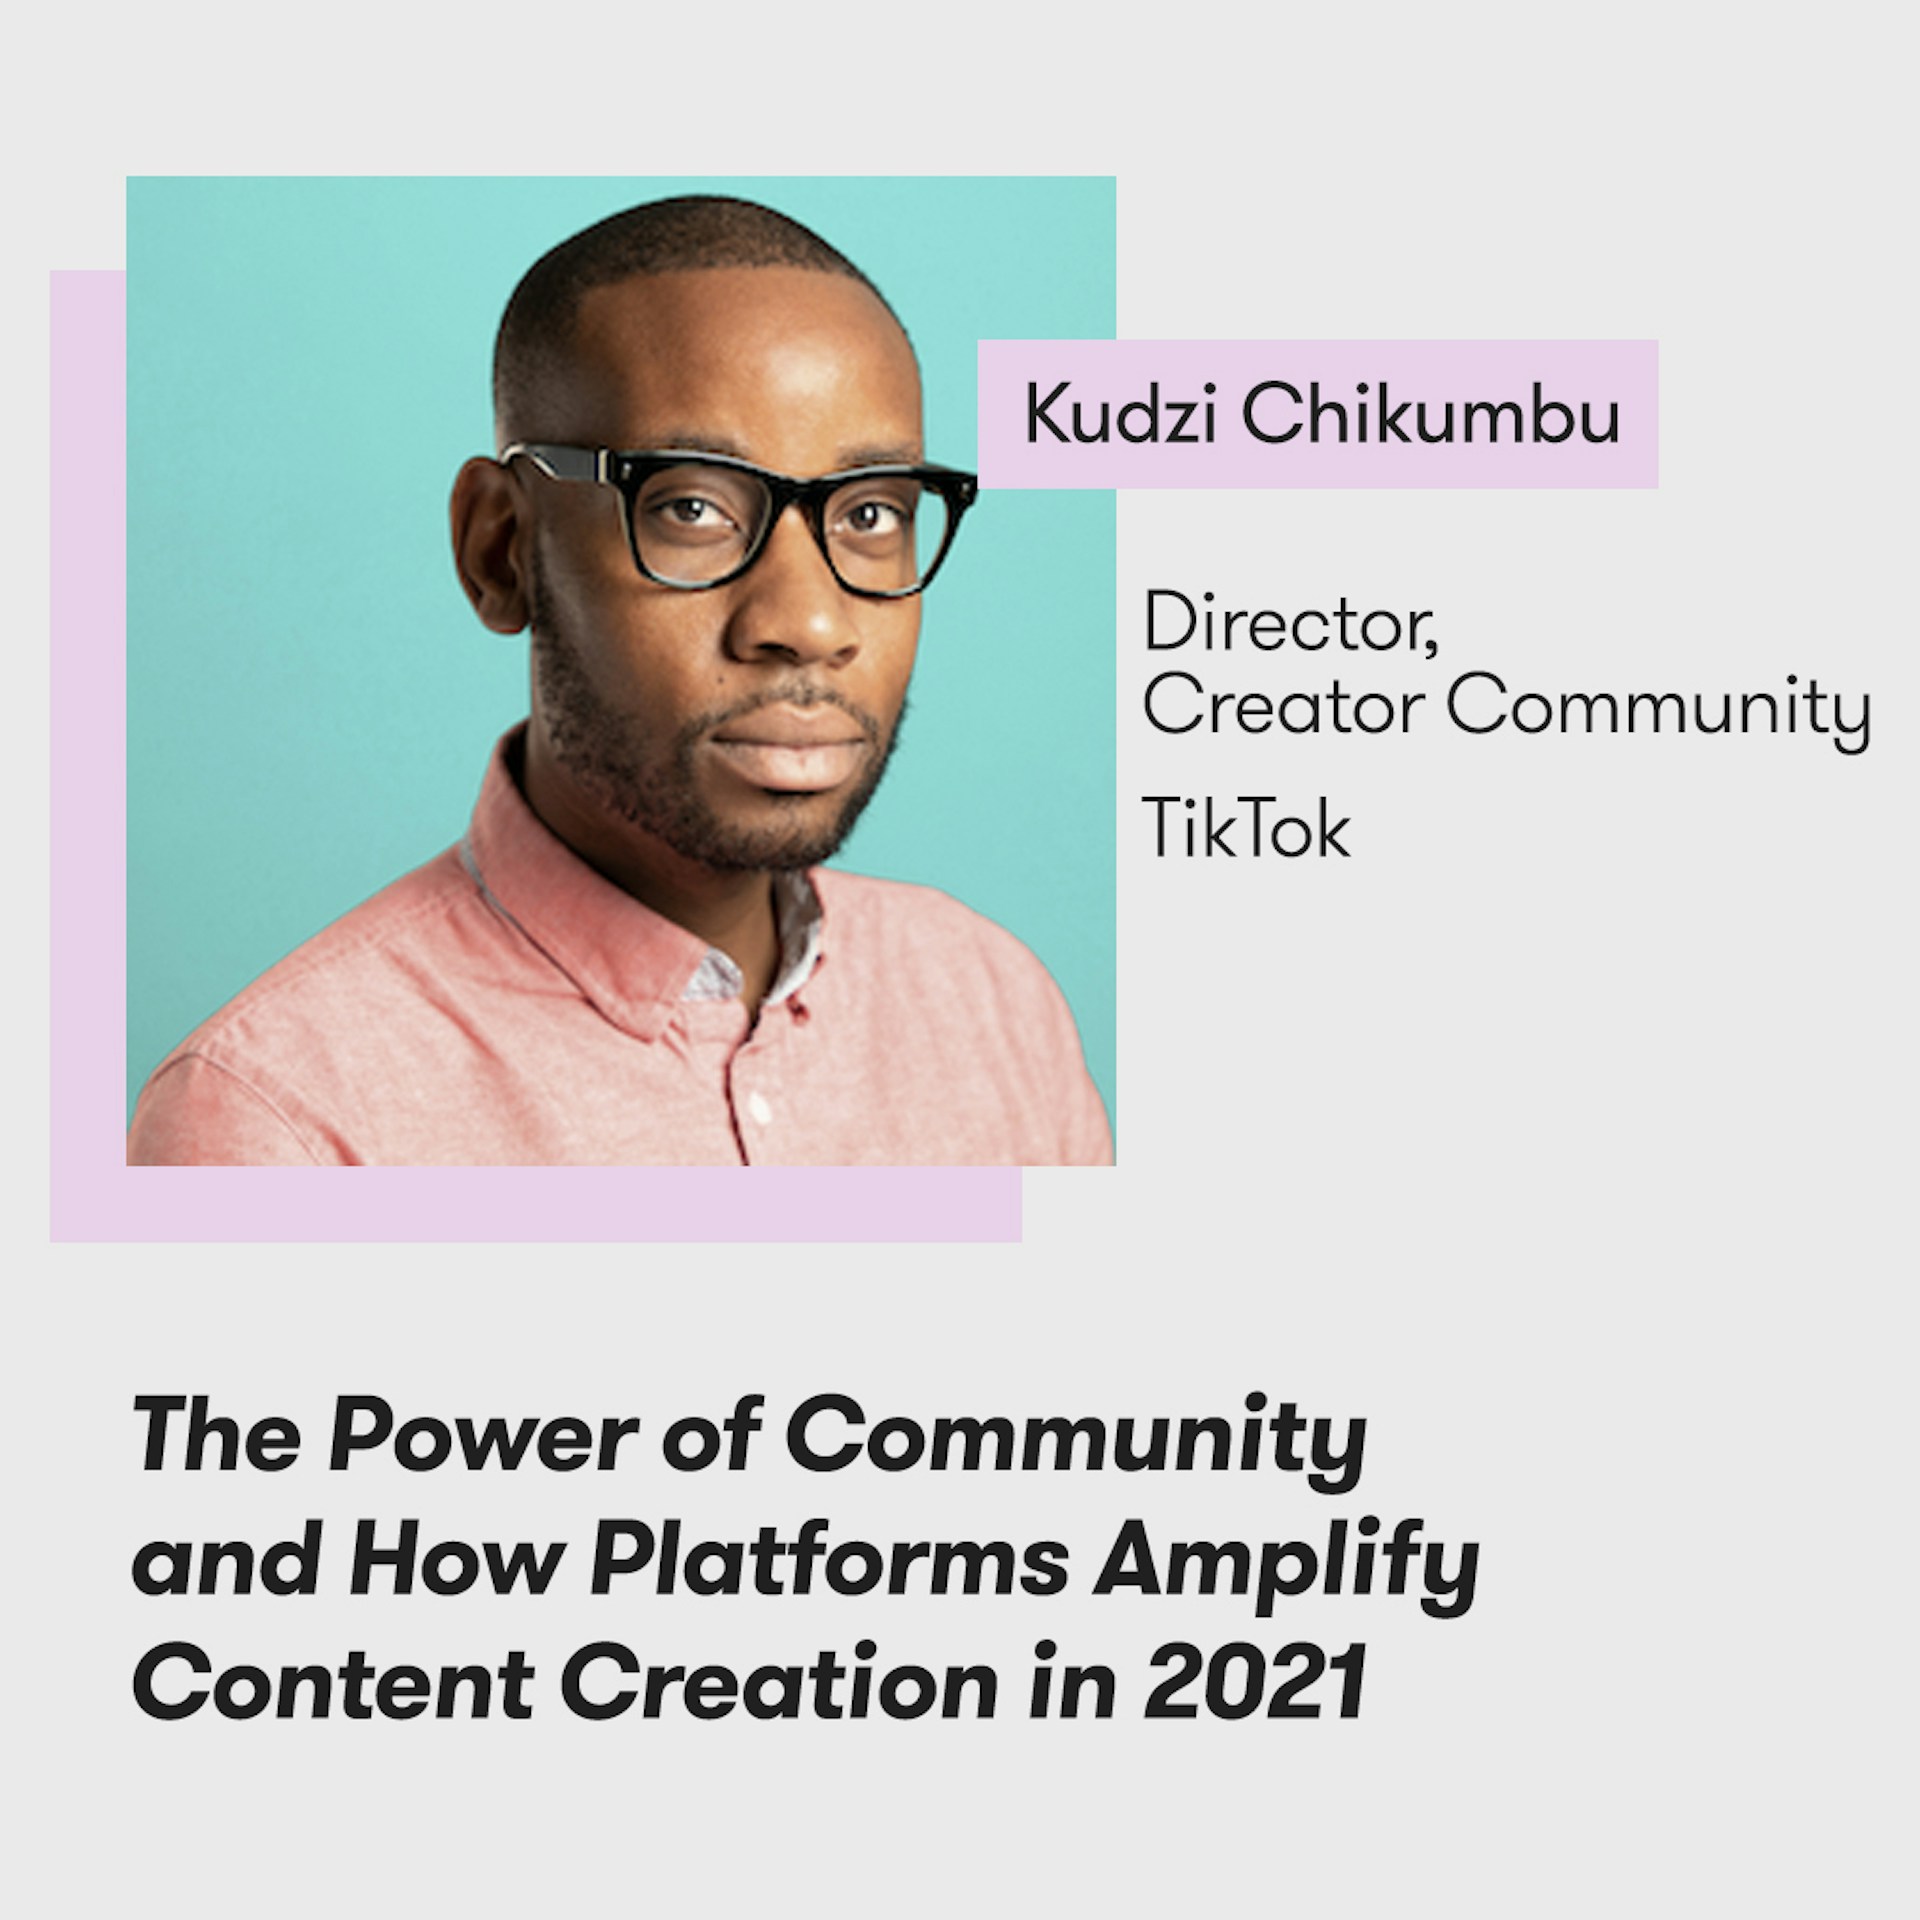 Meltwater Digital Summit - The Future of PR, Marketing and Tech - Kudzi Chikumbu, TikTok